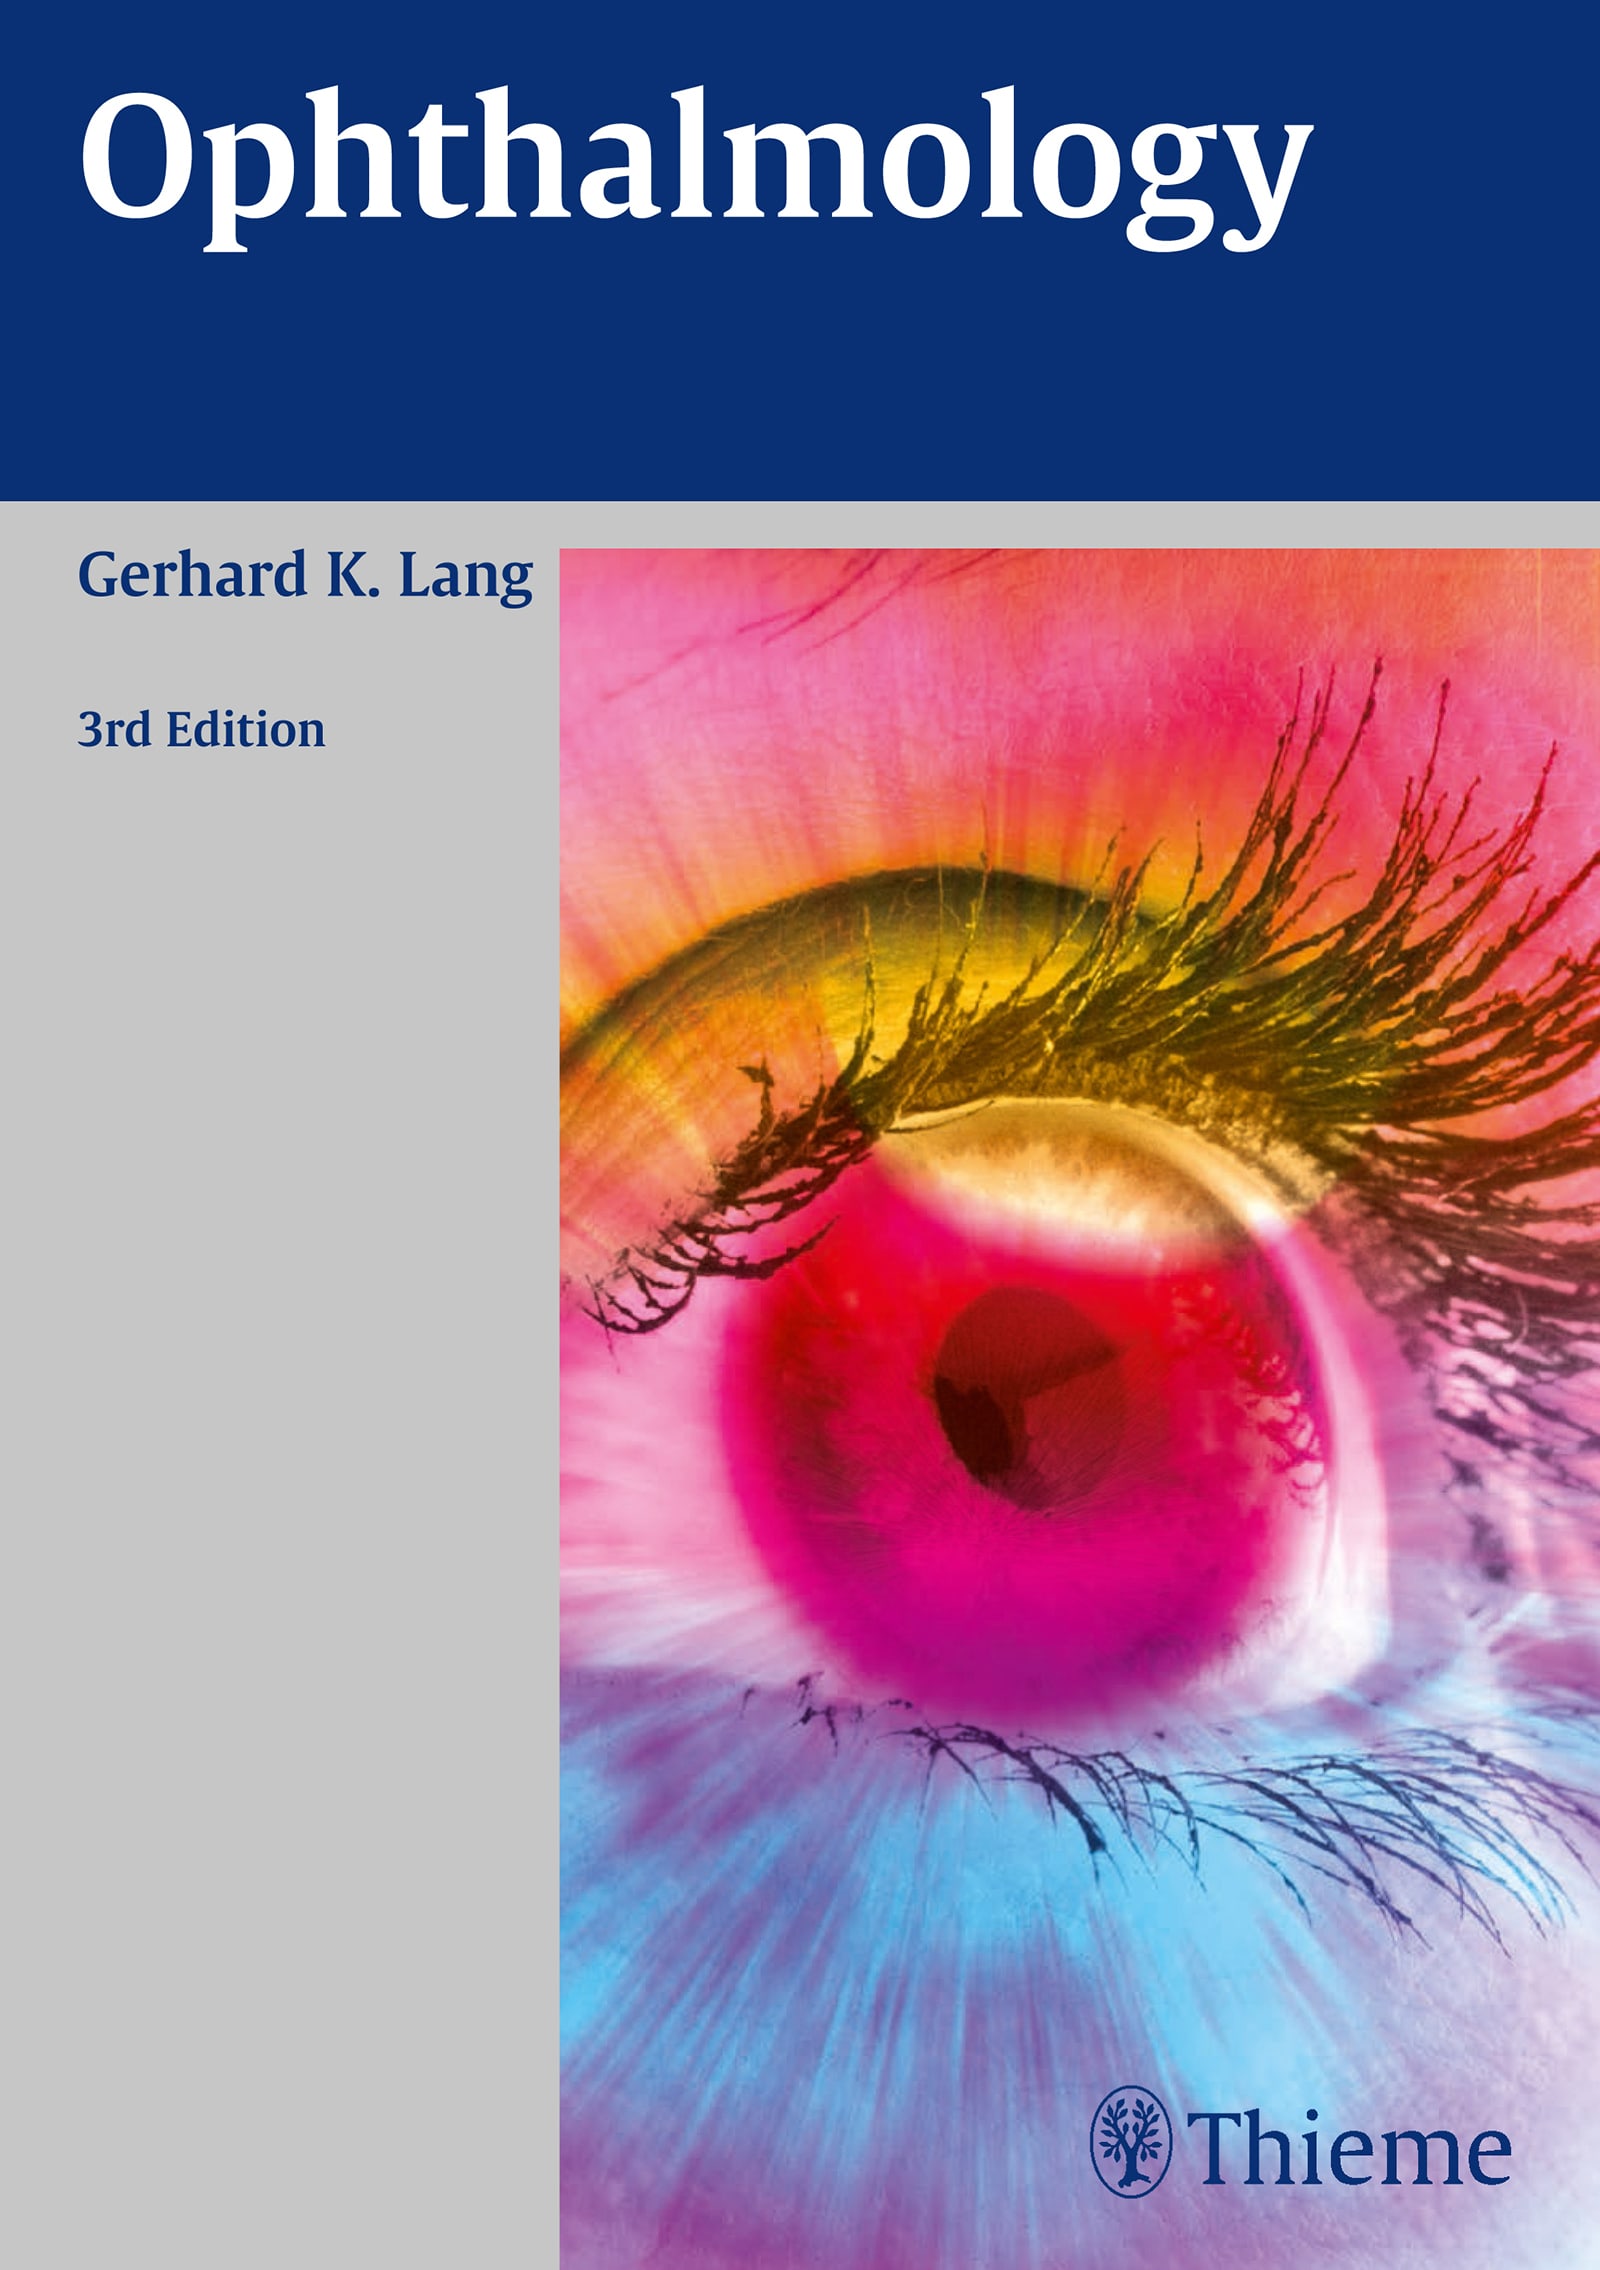 ophthalmology 3rd edition gerhard k lang 3131261633, 9783131261632